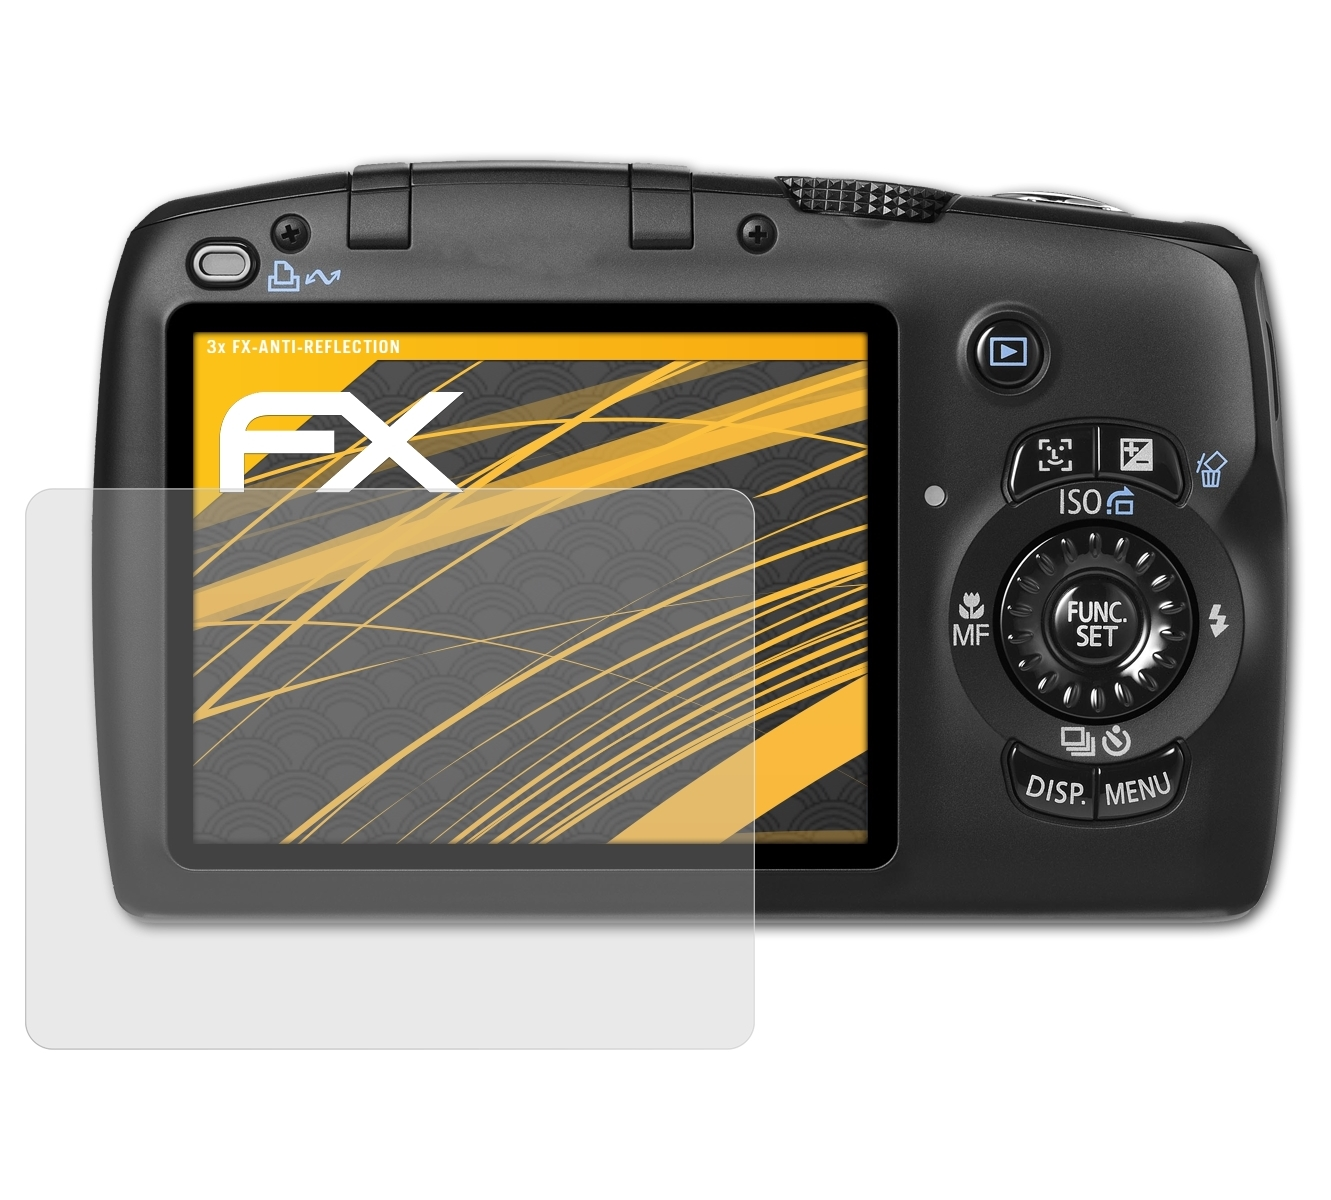 ATFOLIX 3x FX-Antireflex Displayschutz(für Canon SX110 PowerShot IS)